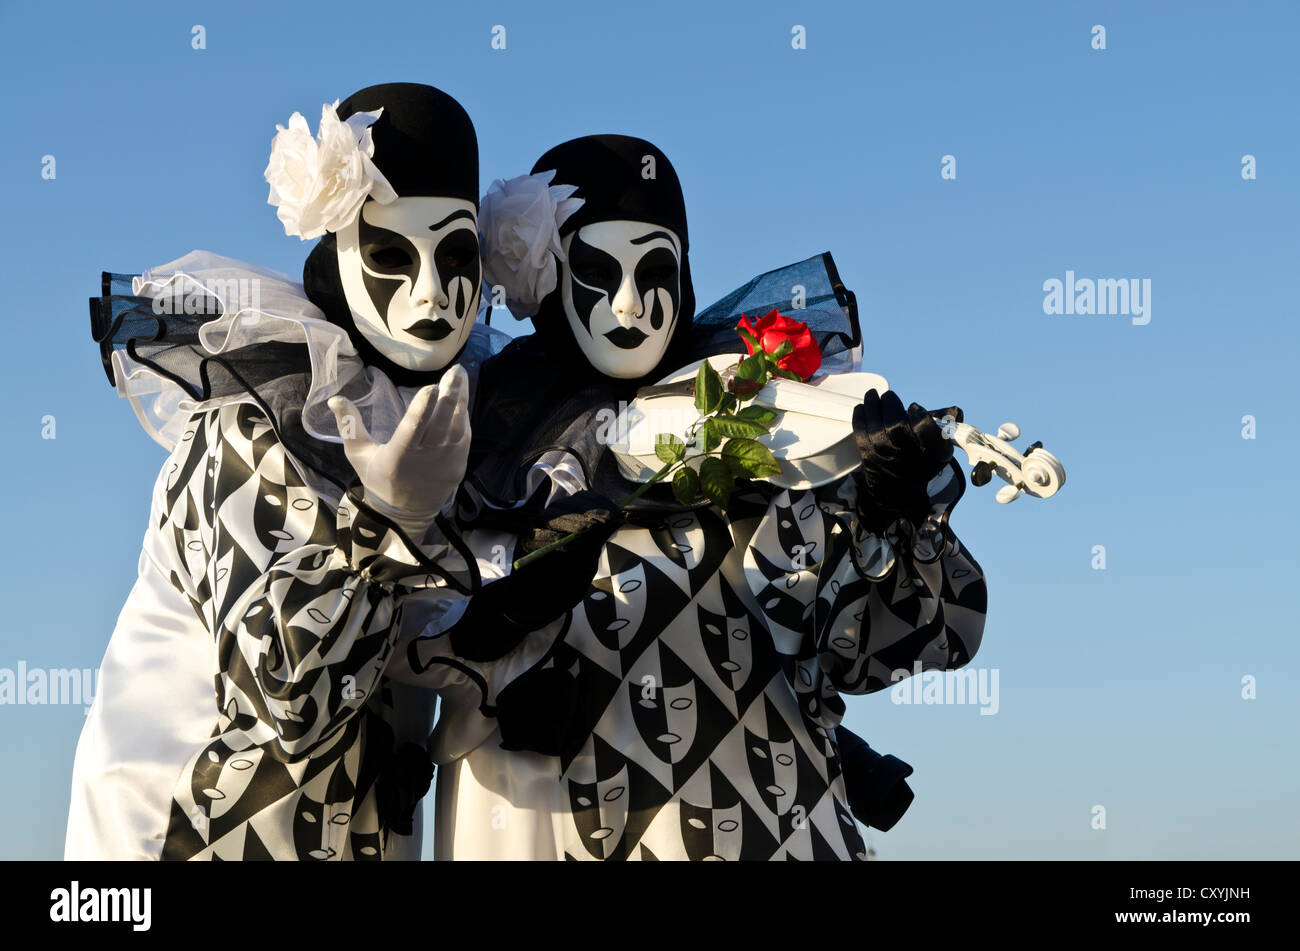 Venetian masks, Carnevale, carnival in Venice, Veneto, Italy, Europe Stock Photo